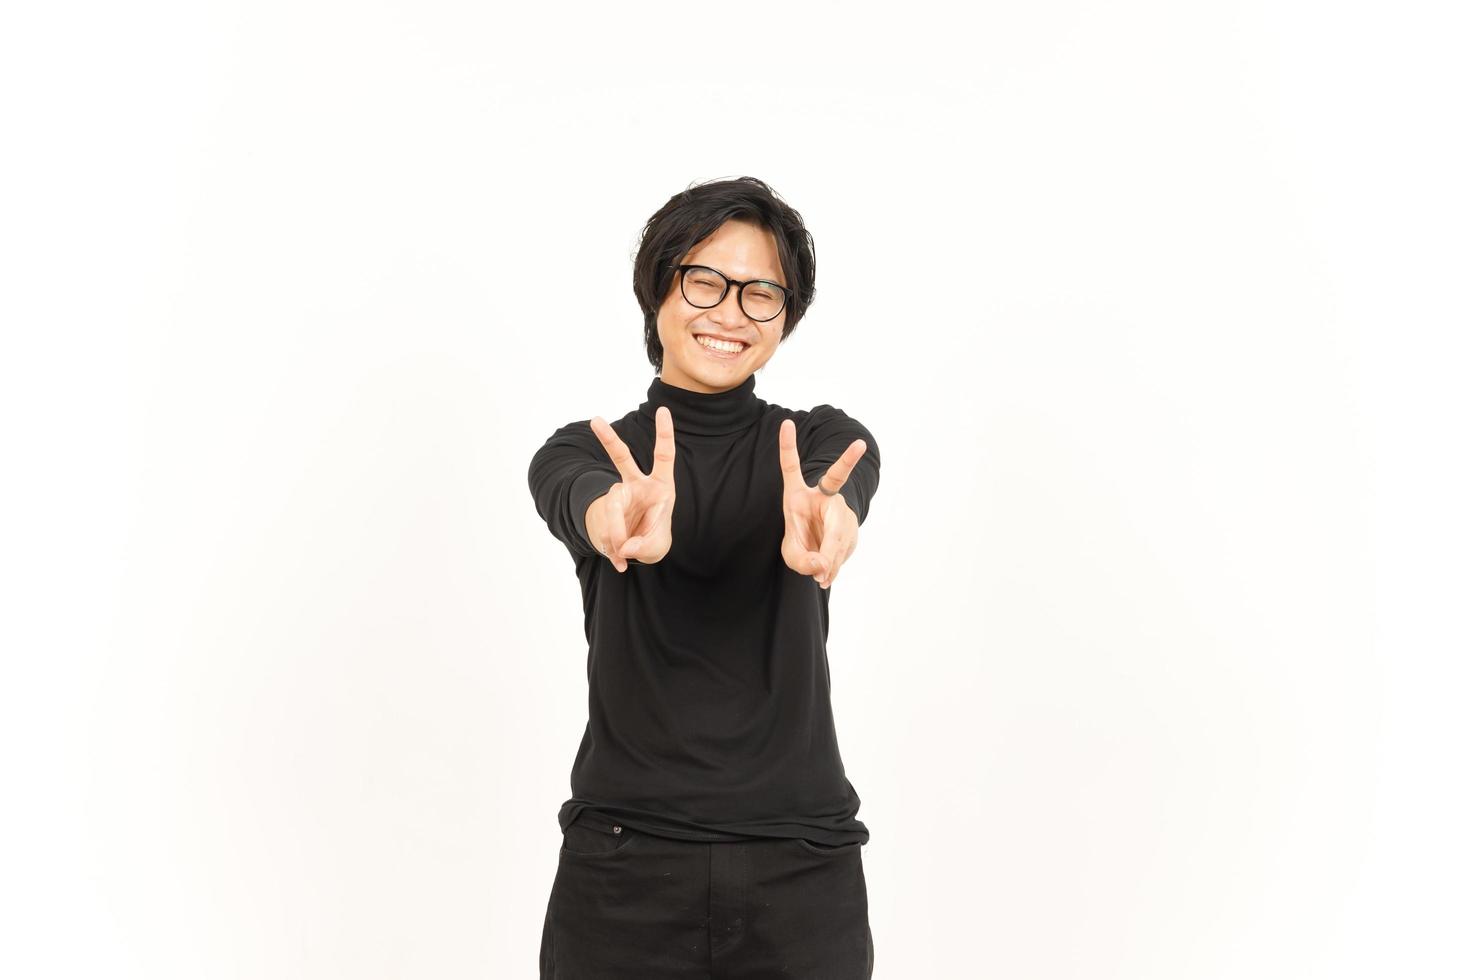 sonrisa y demostración paz firmar de hermoso asiático hombre aislado en blanco antecedentes foto